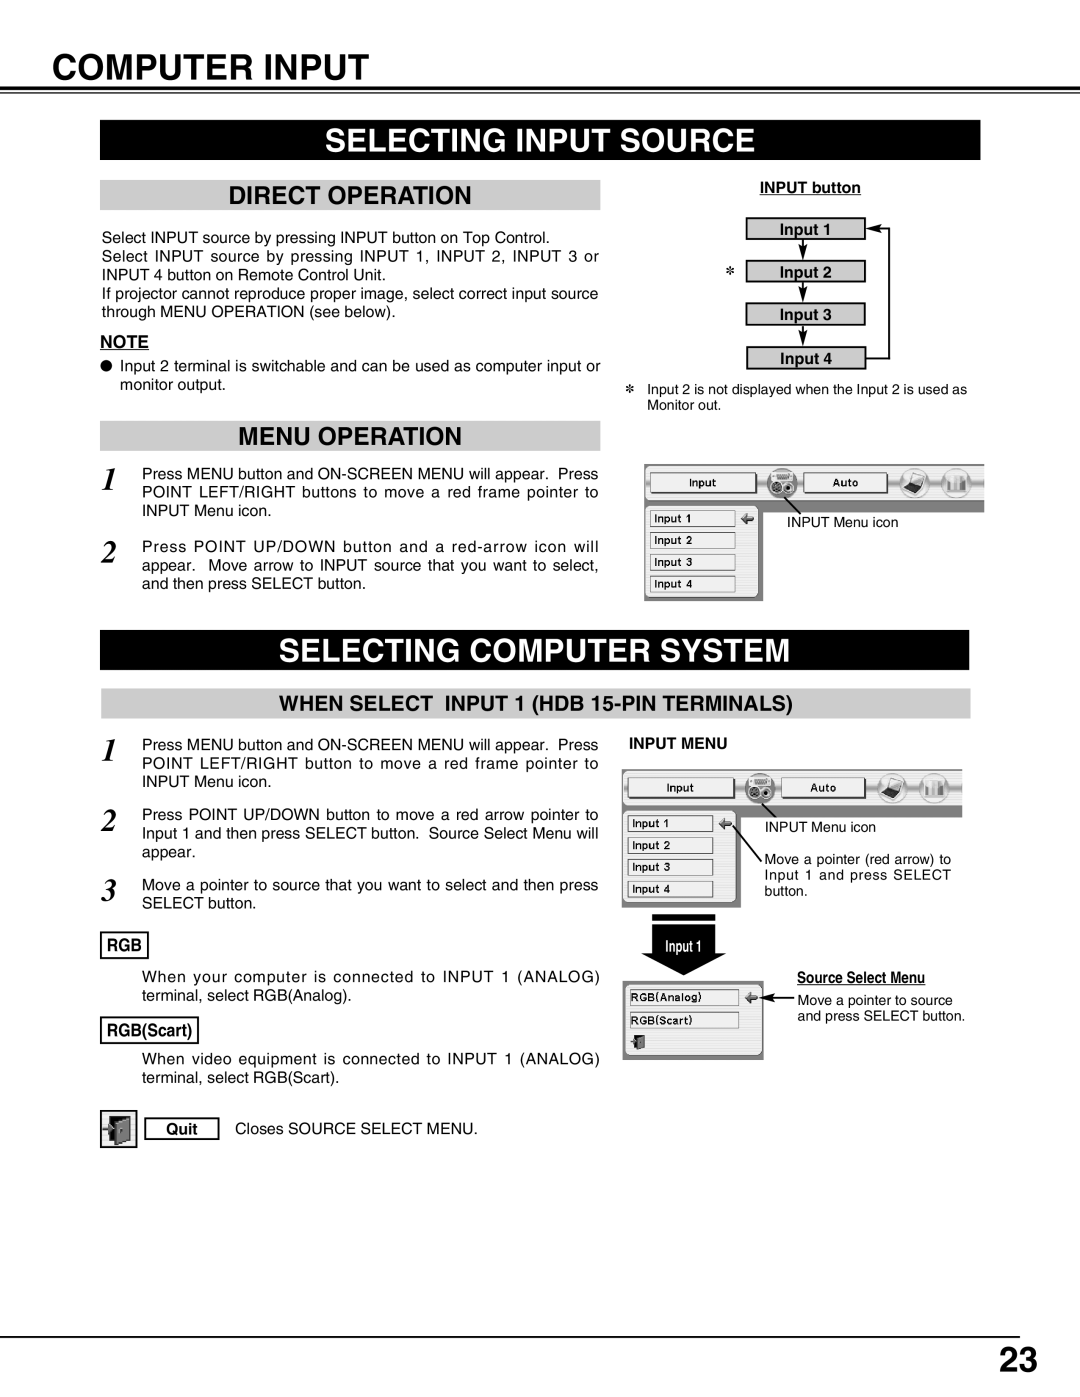 Eiki LC-X50 Computer Input, Selecting Input Source, Selecting Computer System, INPUT button, Input Input Input Input, Quit 